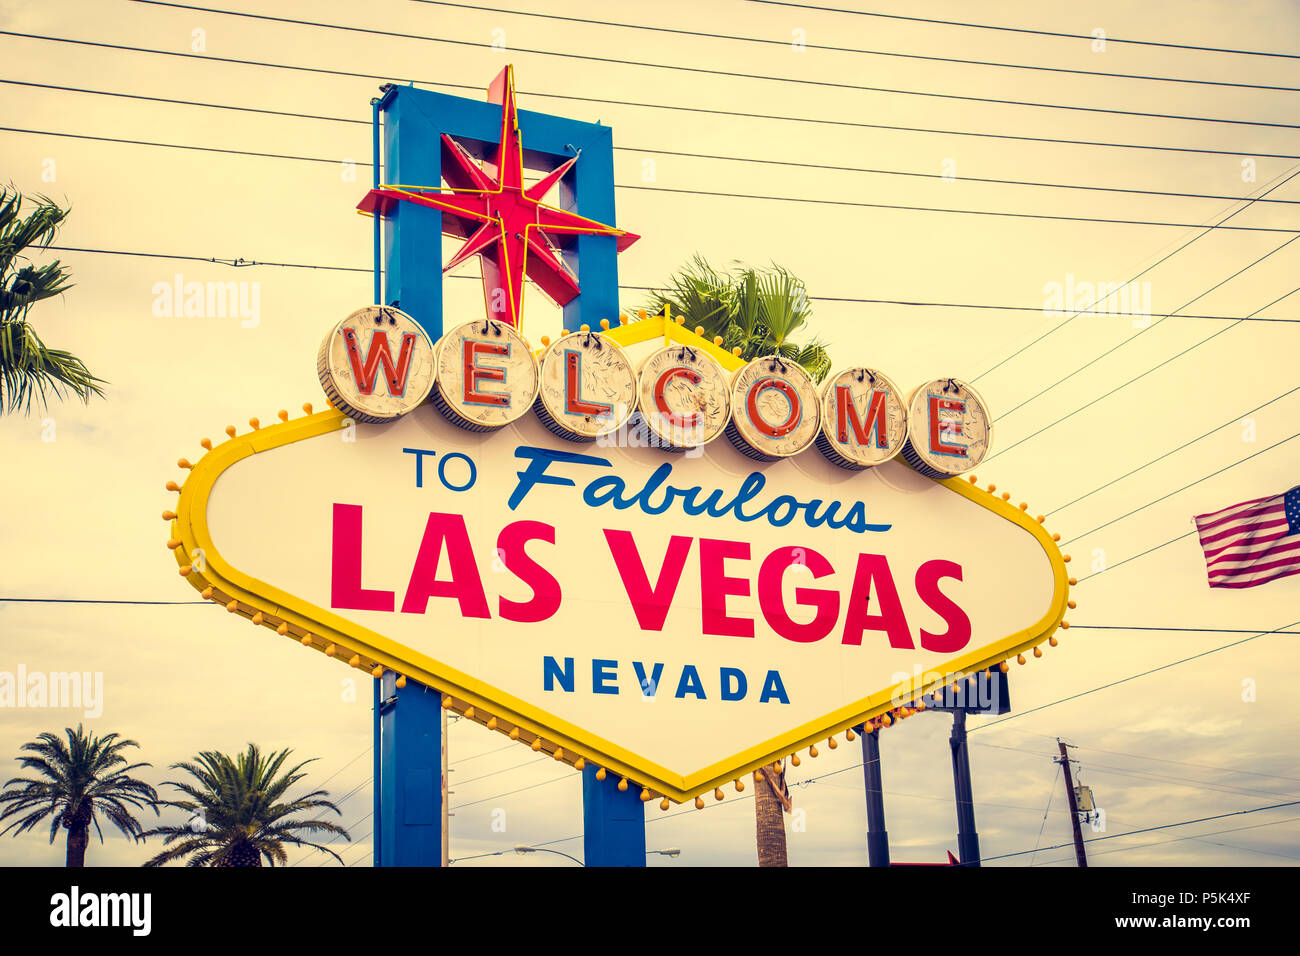 Klassische Ansicht von Welcome to Fabulous Las Vegas Schild am südlichen Ende des berühmten Las Vegas Strip Welt an einem schönen sonnigen Tag mit Retro-Vintage-filter Stockfoto